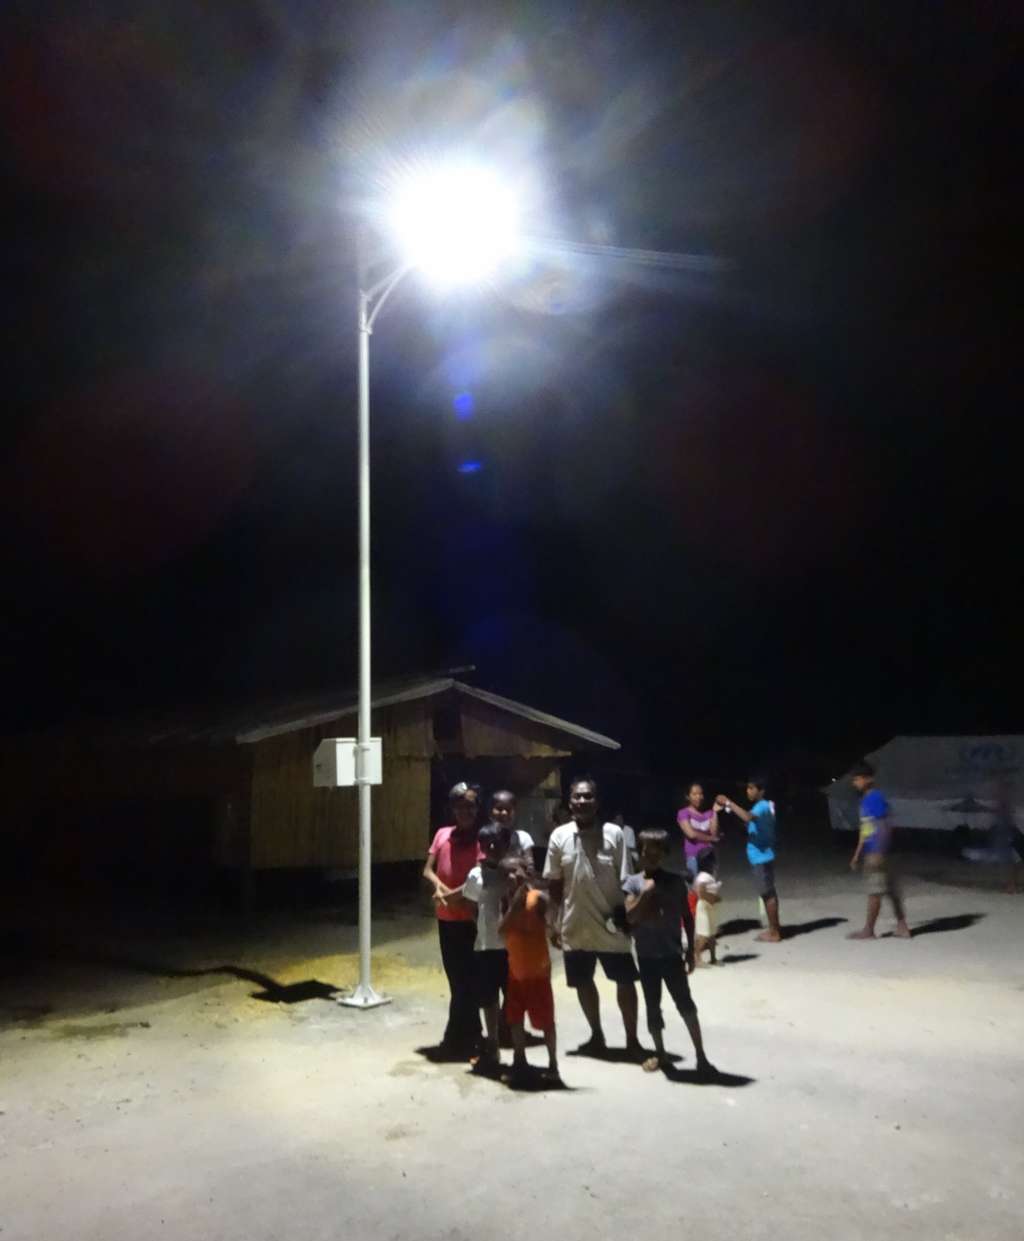 Philippines, région de Guiuan, février 2014. L'ONG Électriciens sans frontières (ESF) installe des éclairages autonomes dans les constructions accueillant les personnes déplacées après le passage du typhon Haiyan. © Électriciens sans frontières